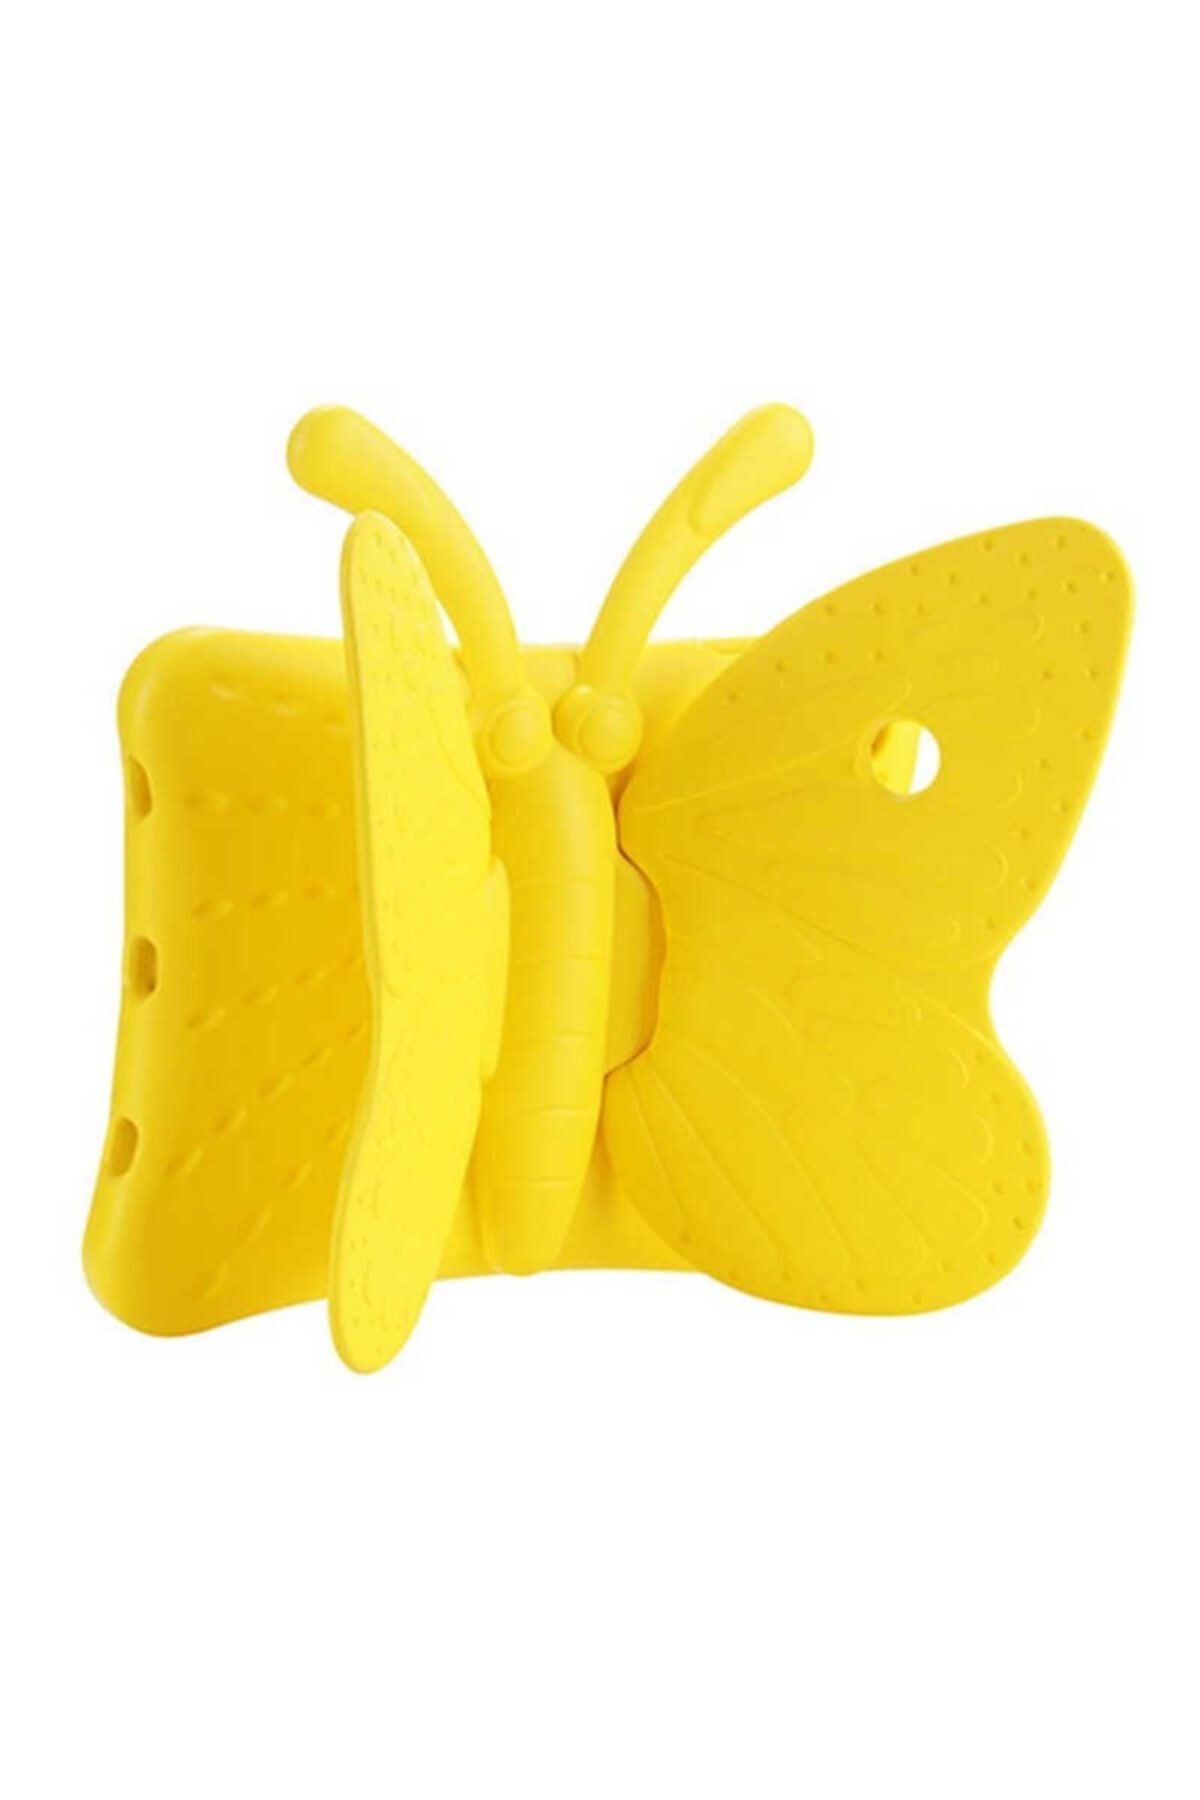 HTstore Tablet 2 3 4 Butterfly Standlı Tablet Kılıf-sarı